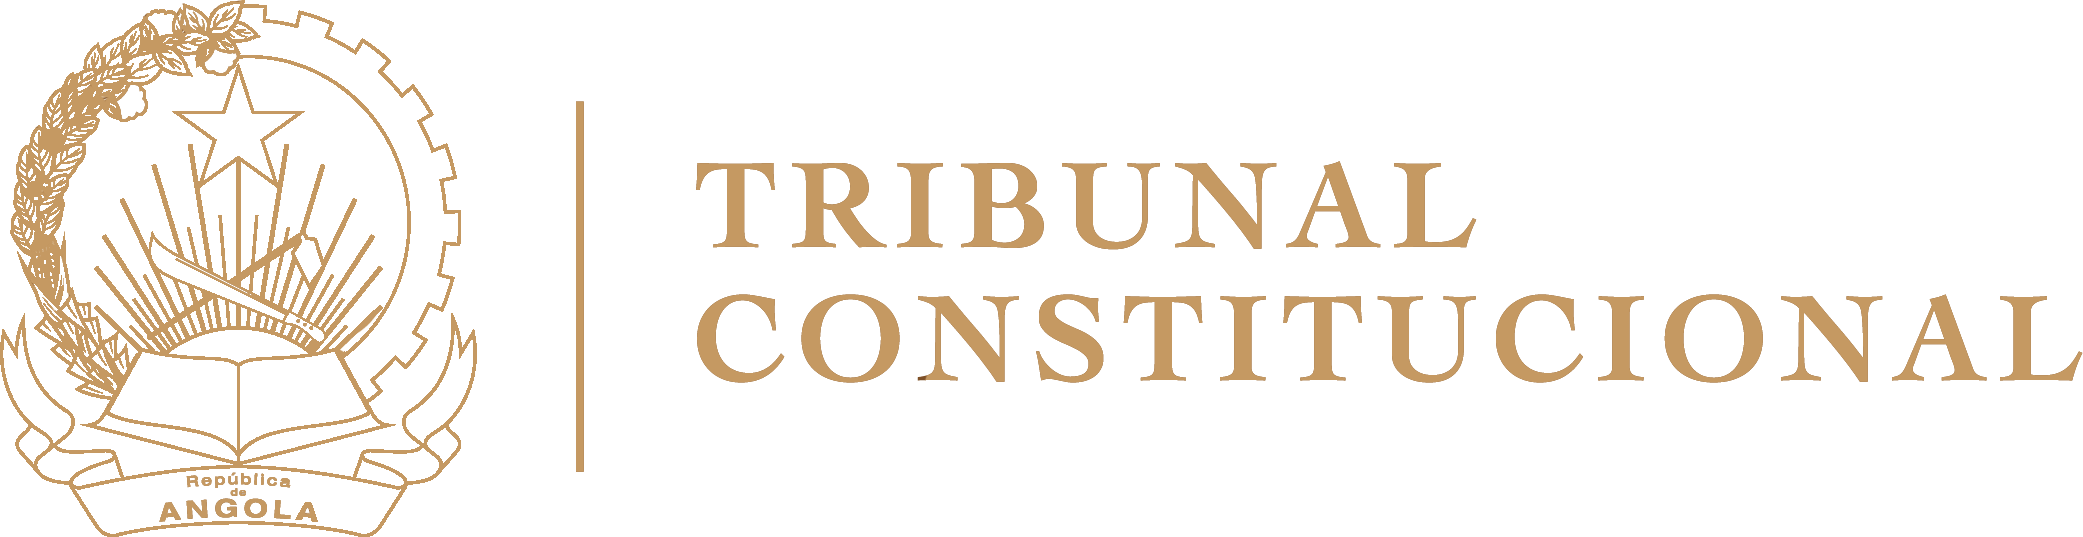 Portal do Tribunal Constitucional